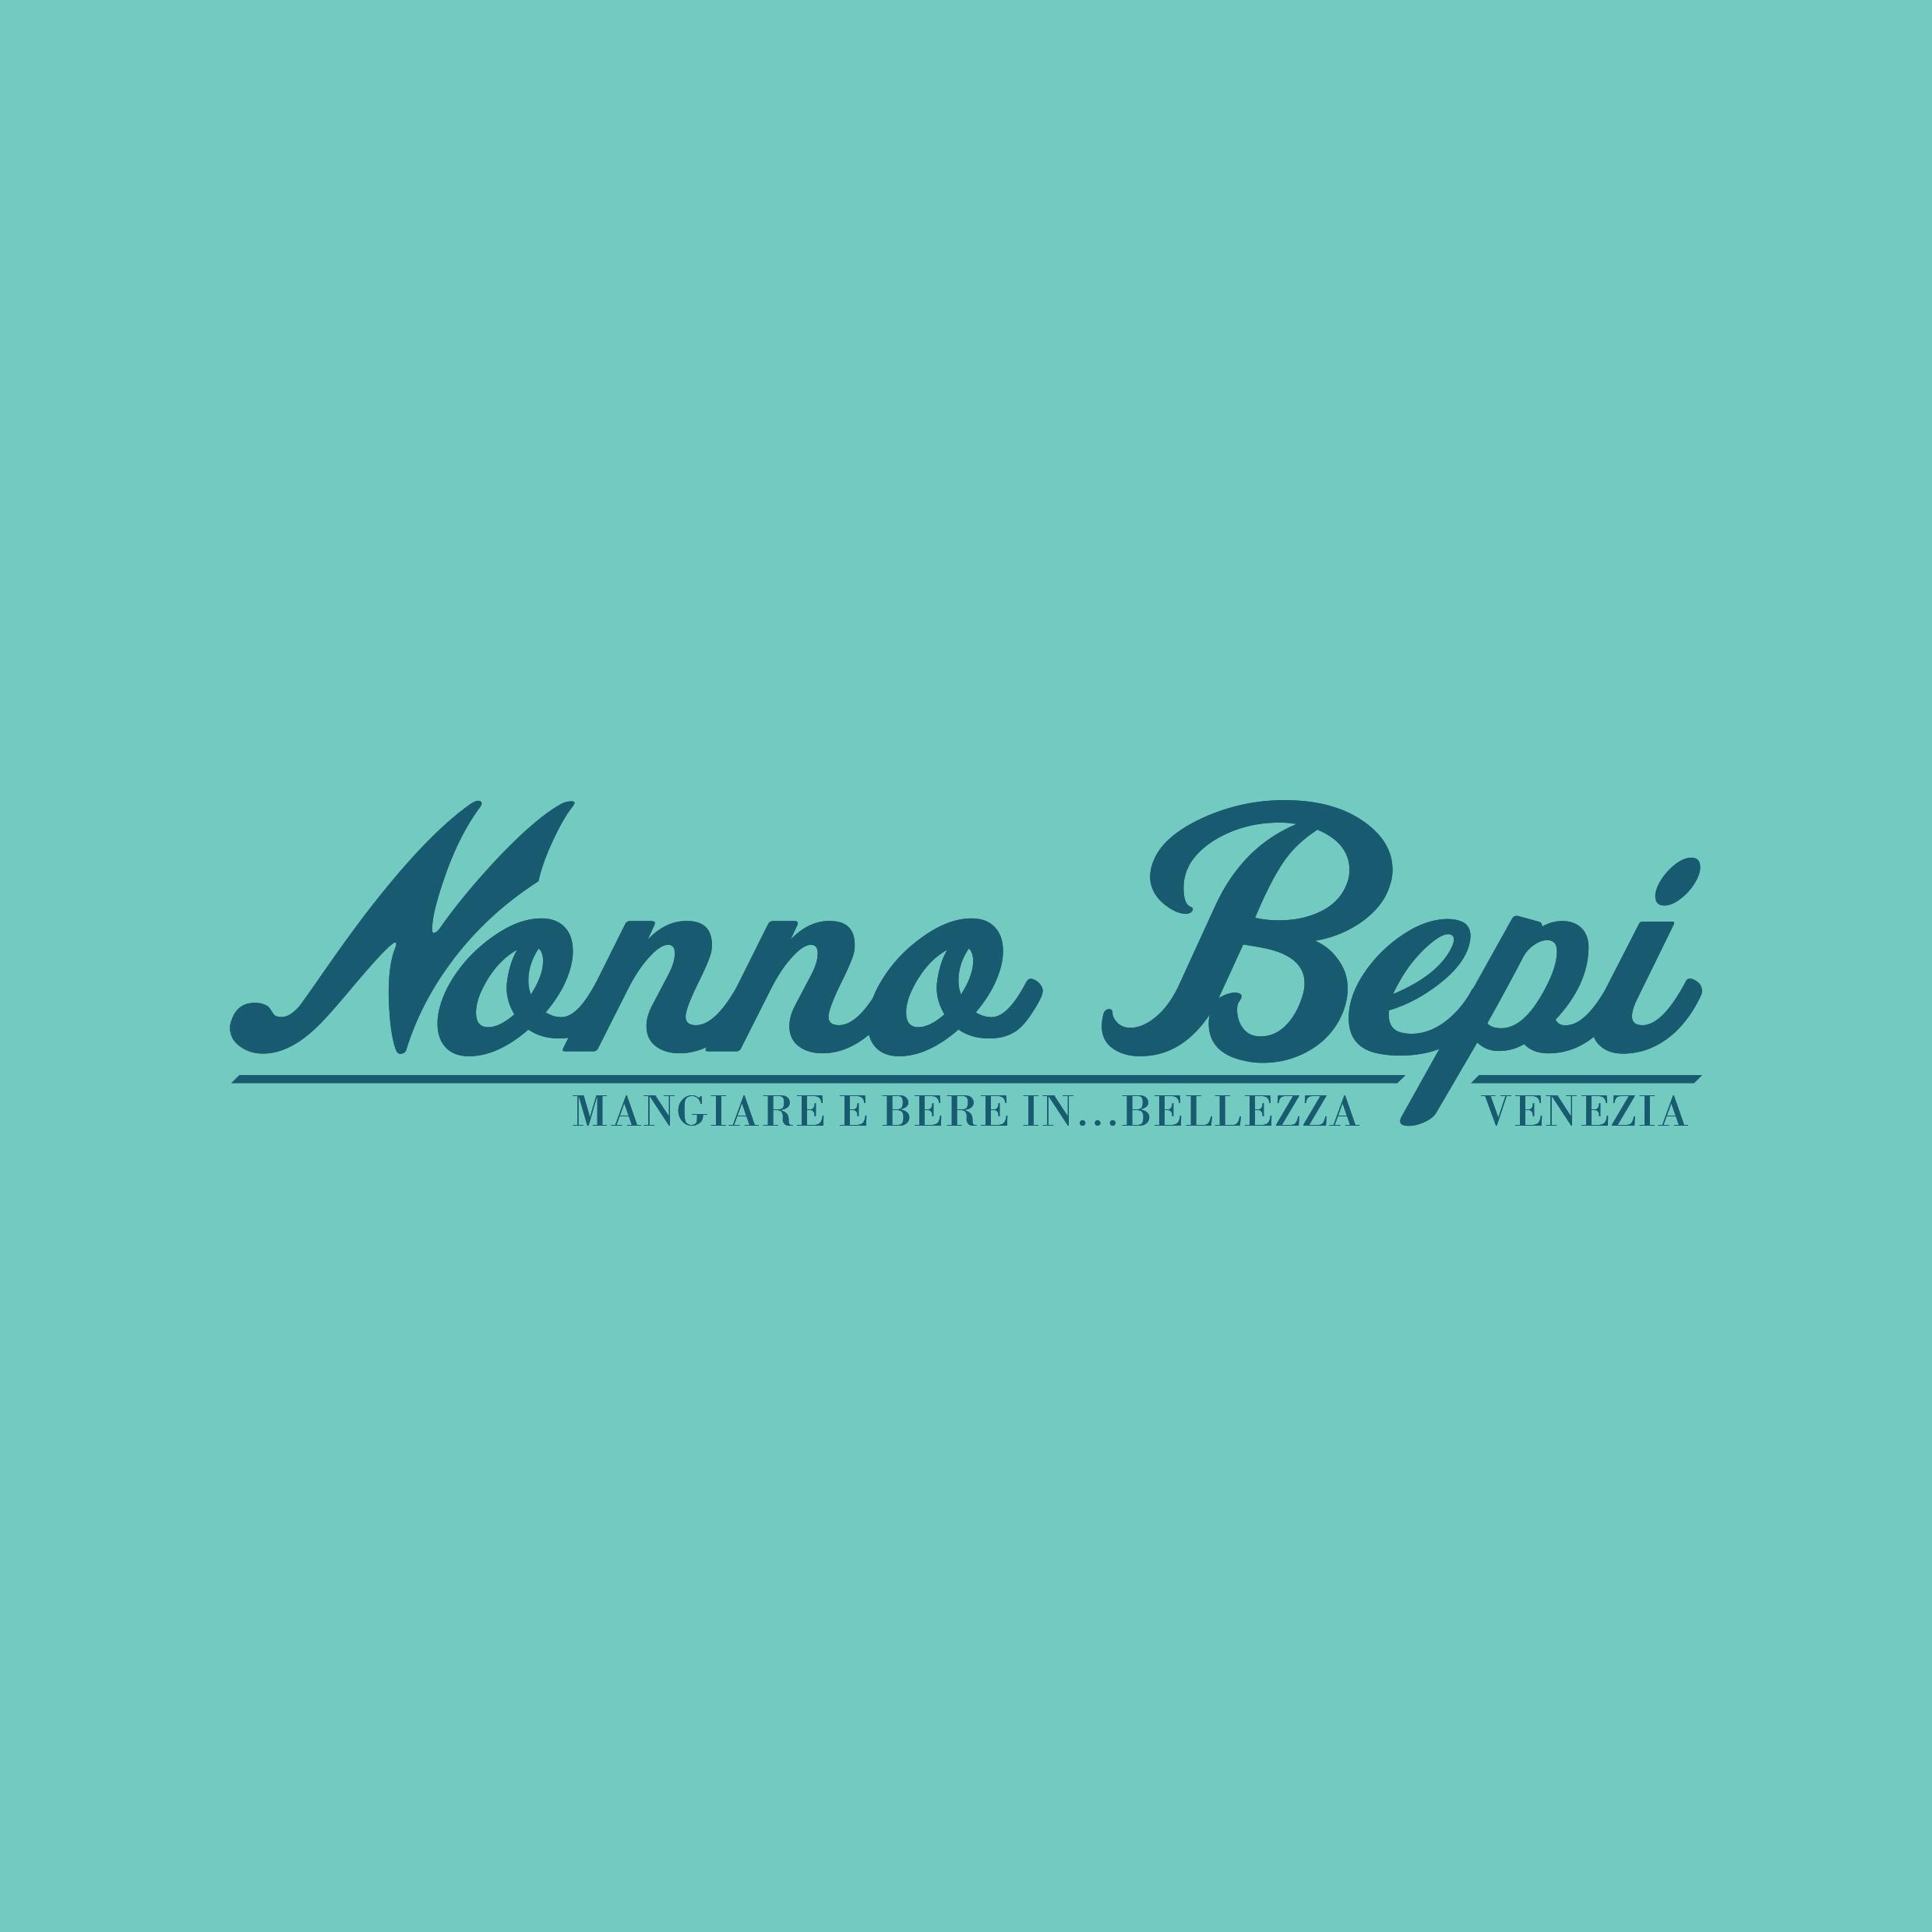 NonnoBepi Logo